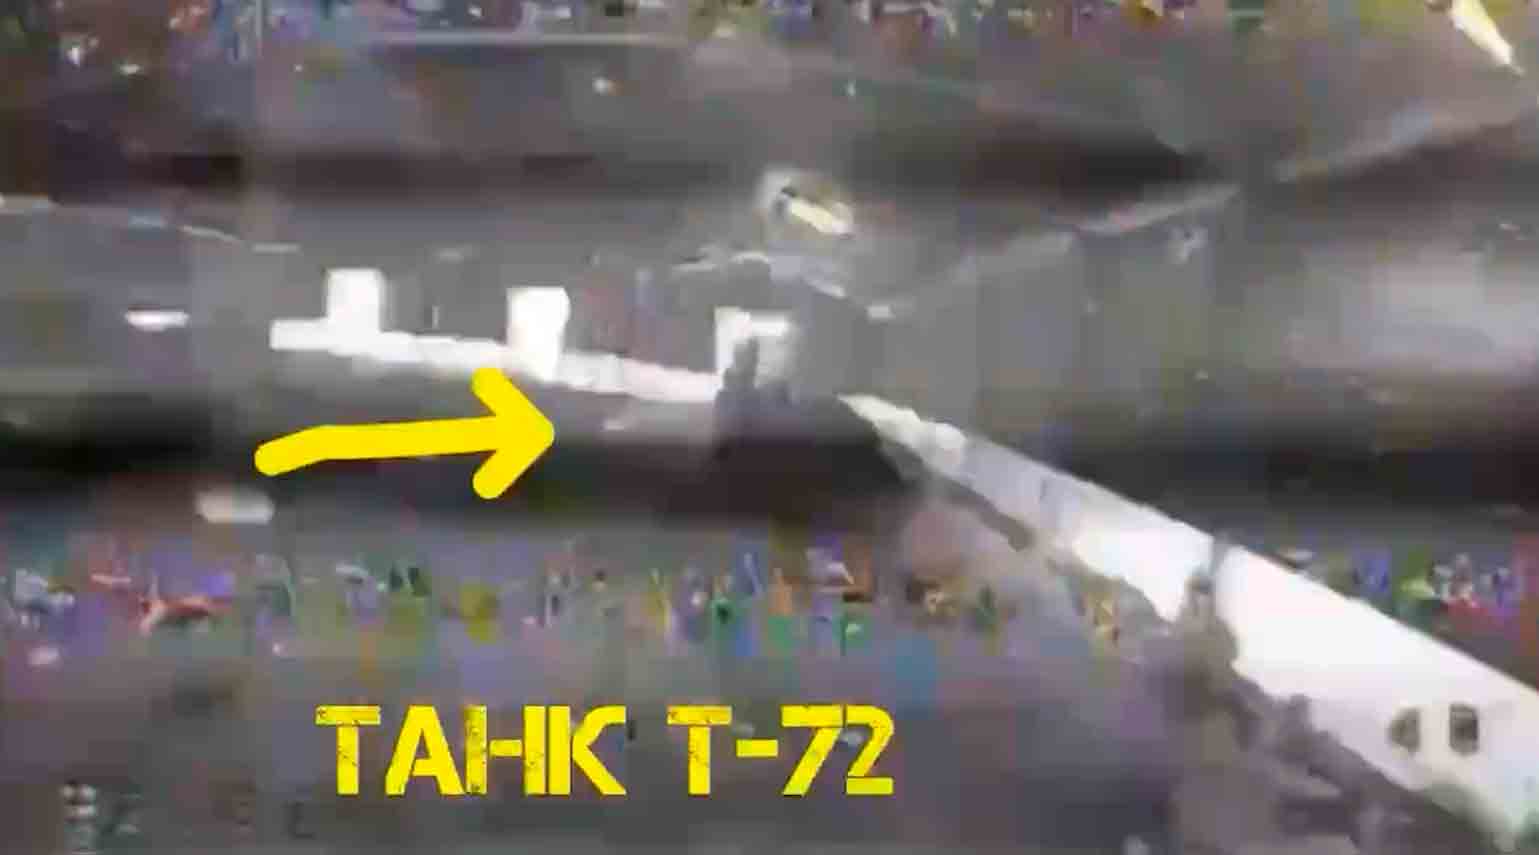 Ukrainische Drohnen zerstören Parkplatz mit gepanzerten russischen Fahrzeugen geparkt